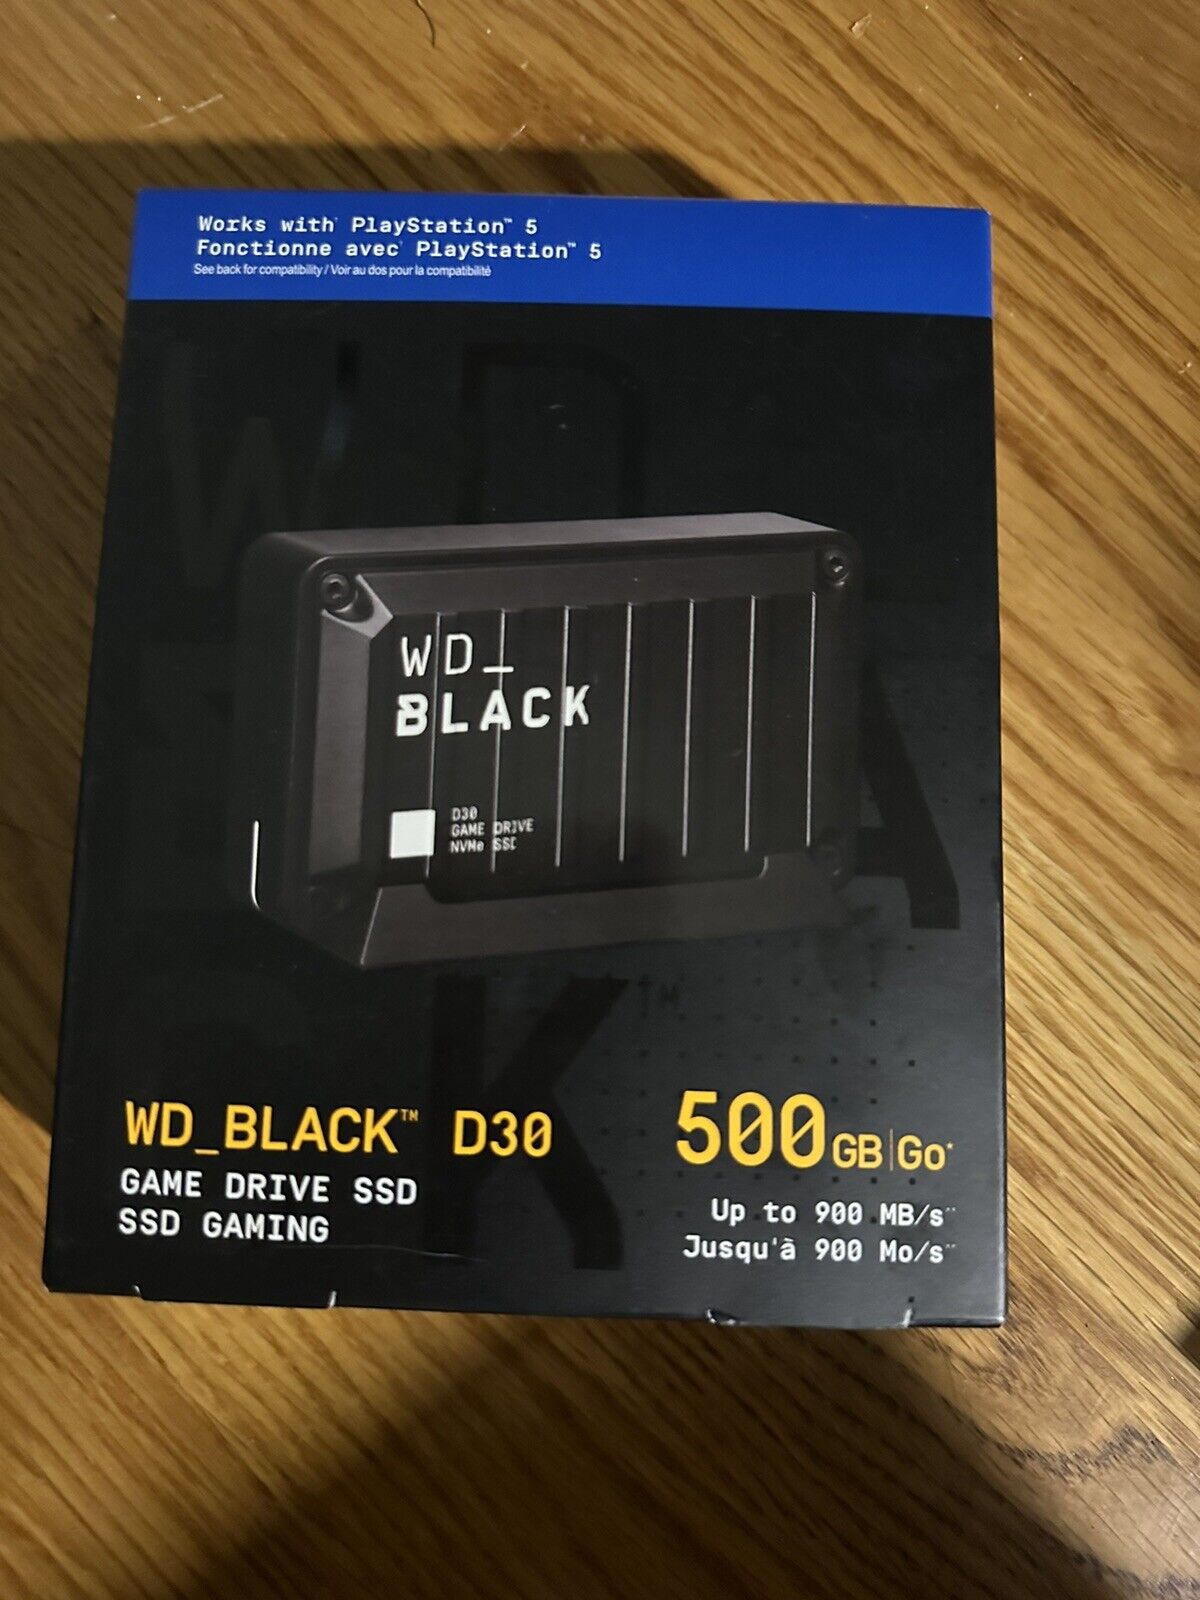 WD BLACK D30 500GB  SSD USB-C, PS5 External Solid State Drive - Black